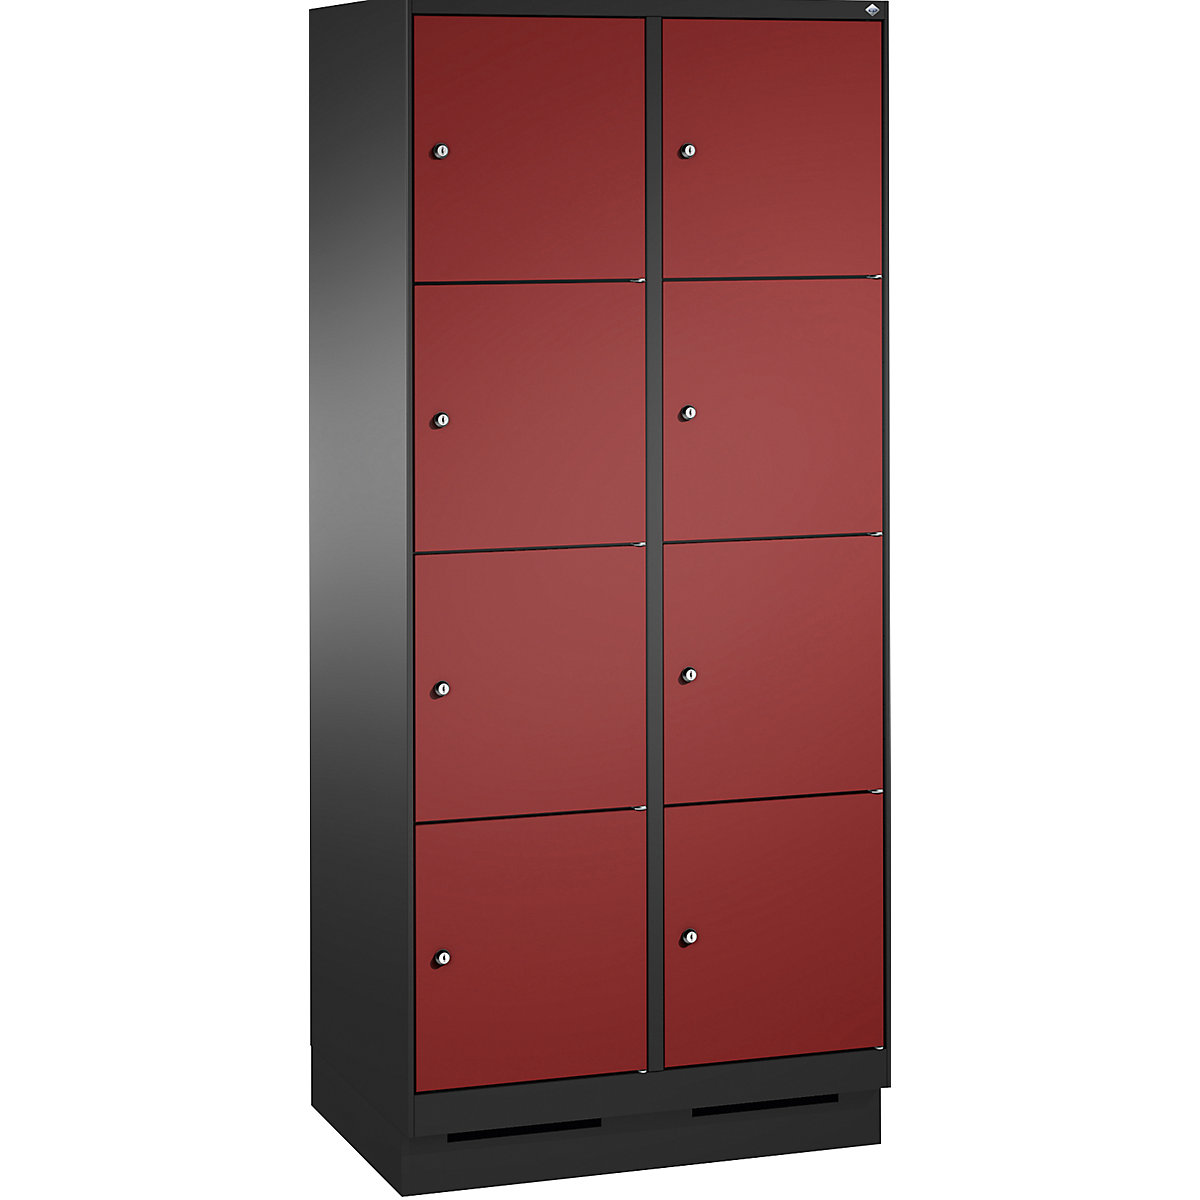 Armoire à casiers sur socle EVOLO – C+P, 2 compartiments, 4 casiers chacun, largeur compartiments 400 mm, gris noir / rouge rubis-13